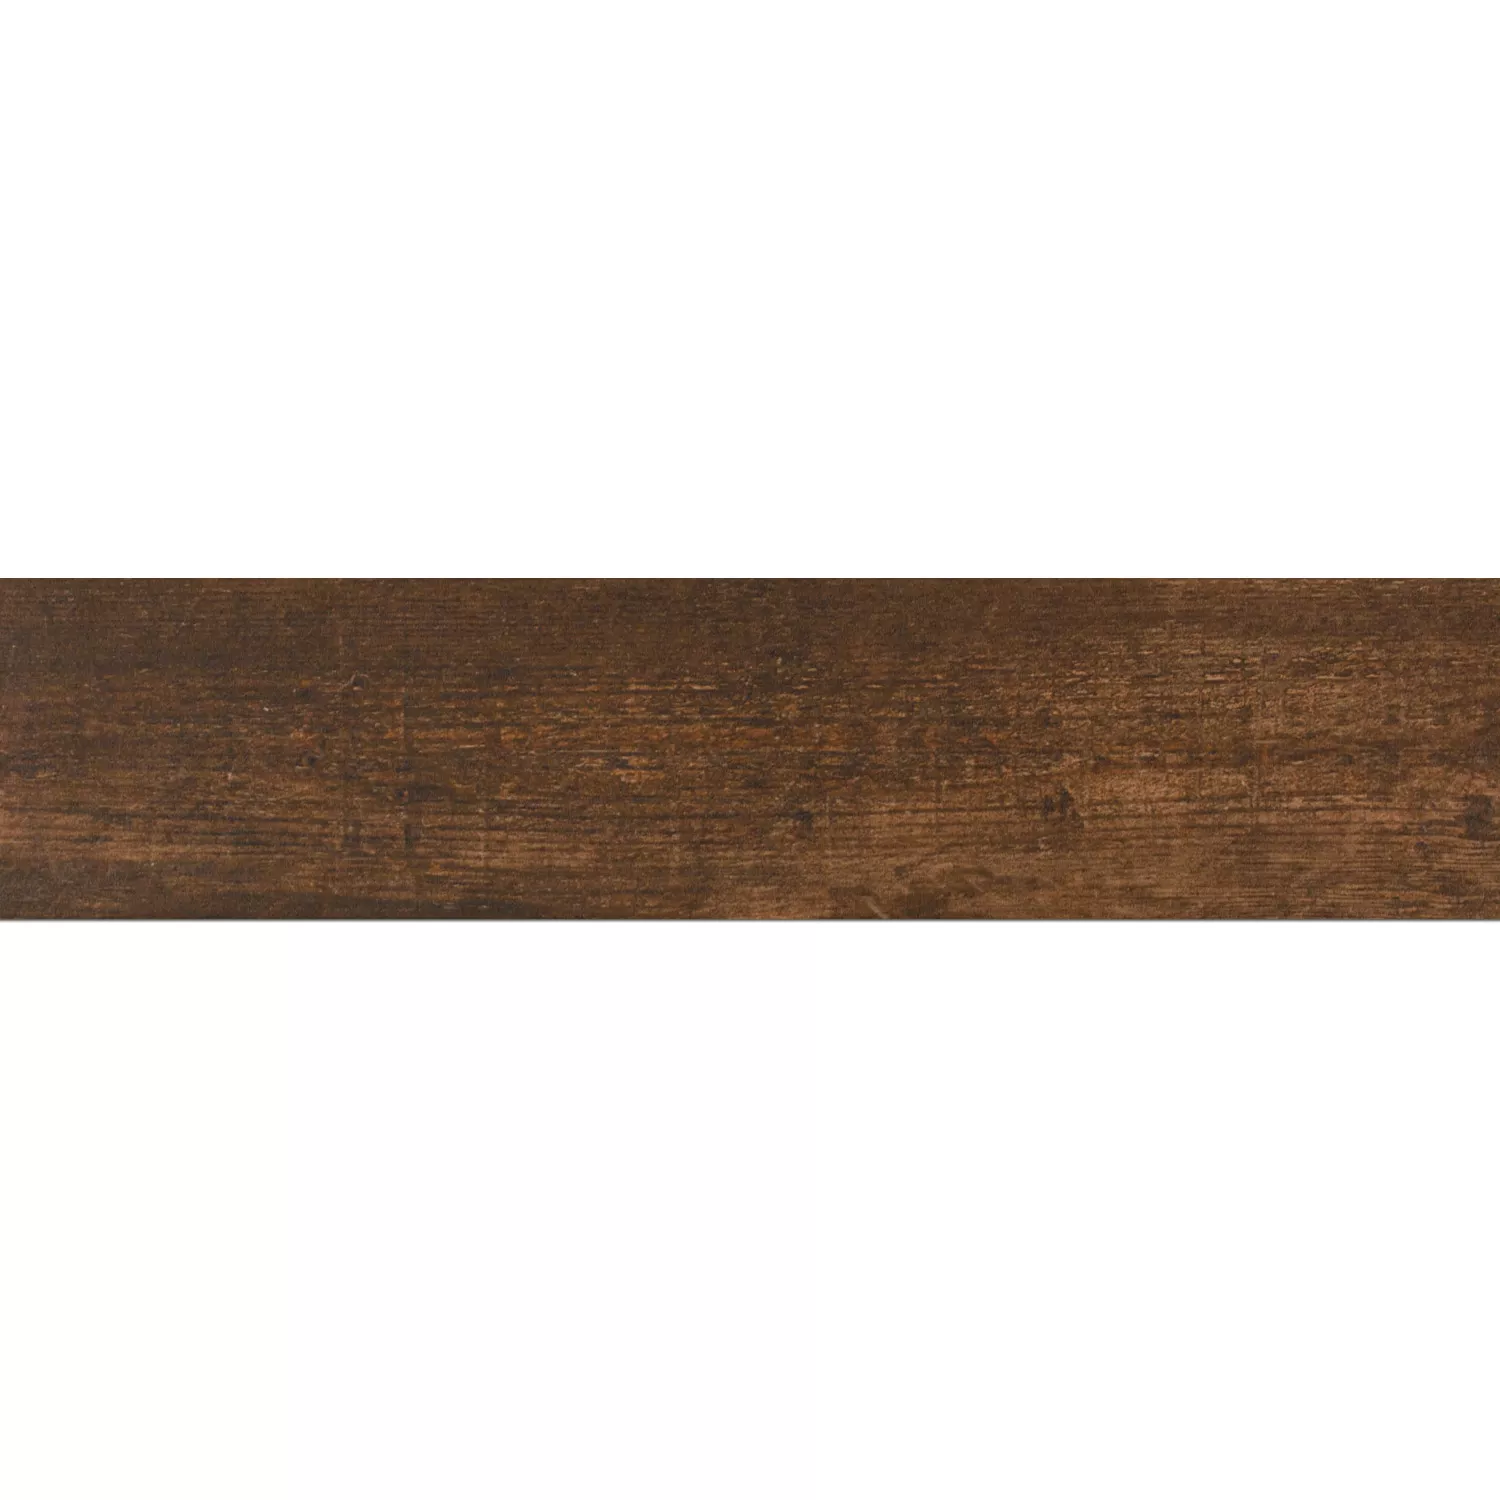 Próbka Wygląd Drewna Płytki Podłogowe Eiffel Pepita 10x60cm